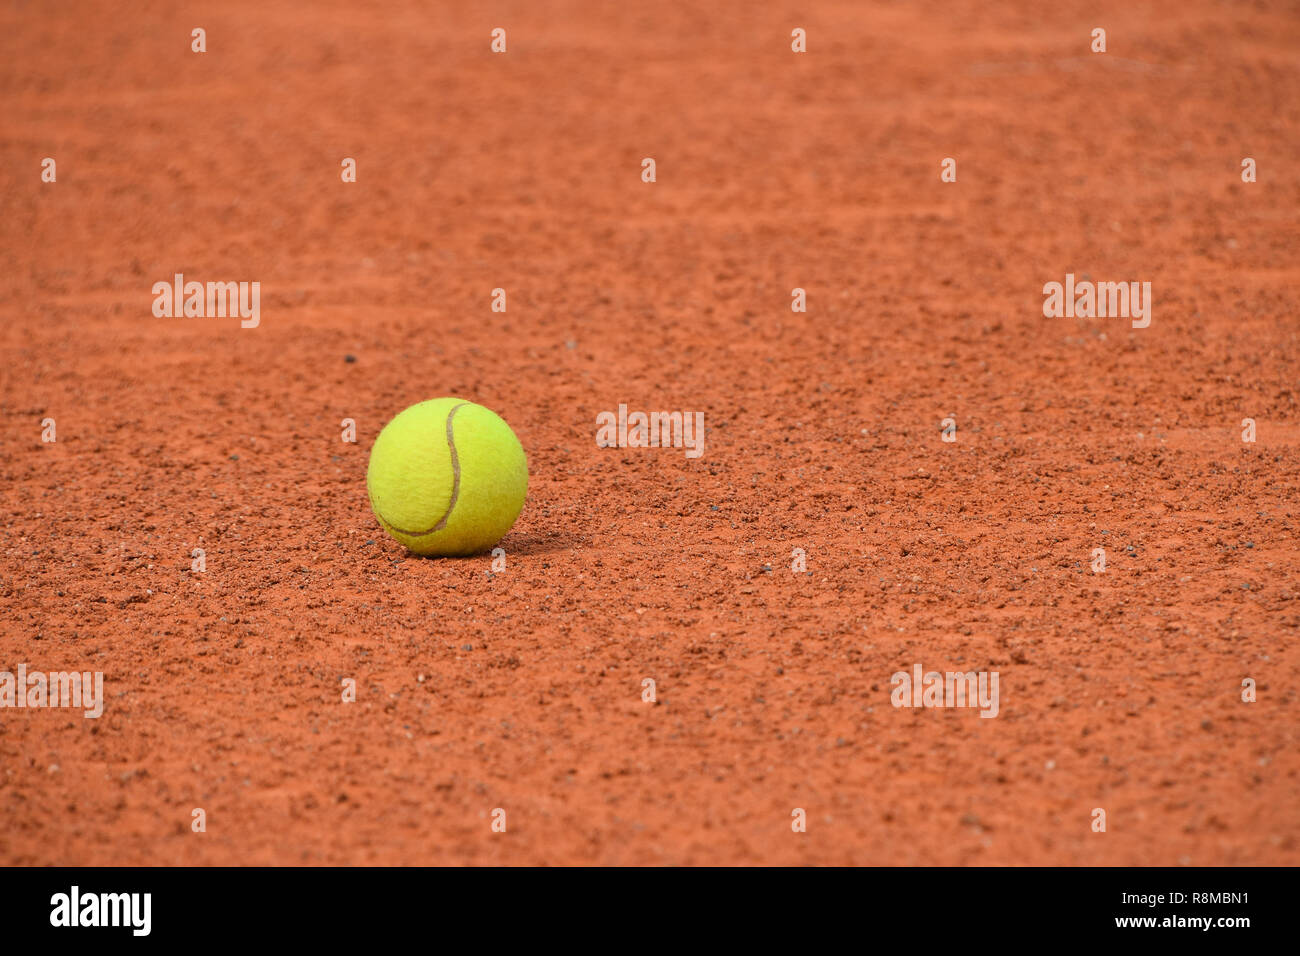 Chiudere un feltro giallo palla da tennis su rosso marrone la massa di argilla corte, basso angolo di visione Foto Stock